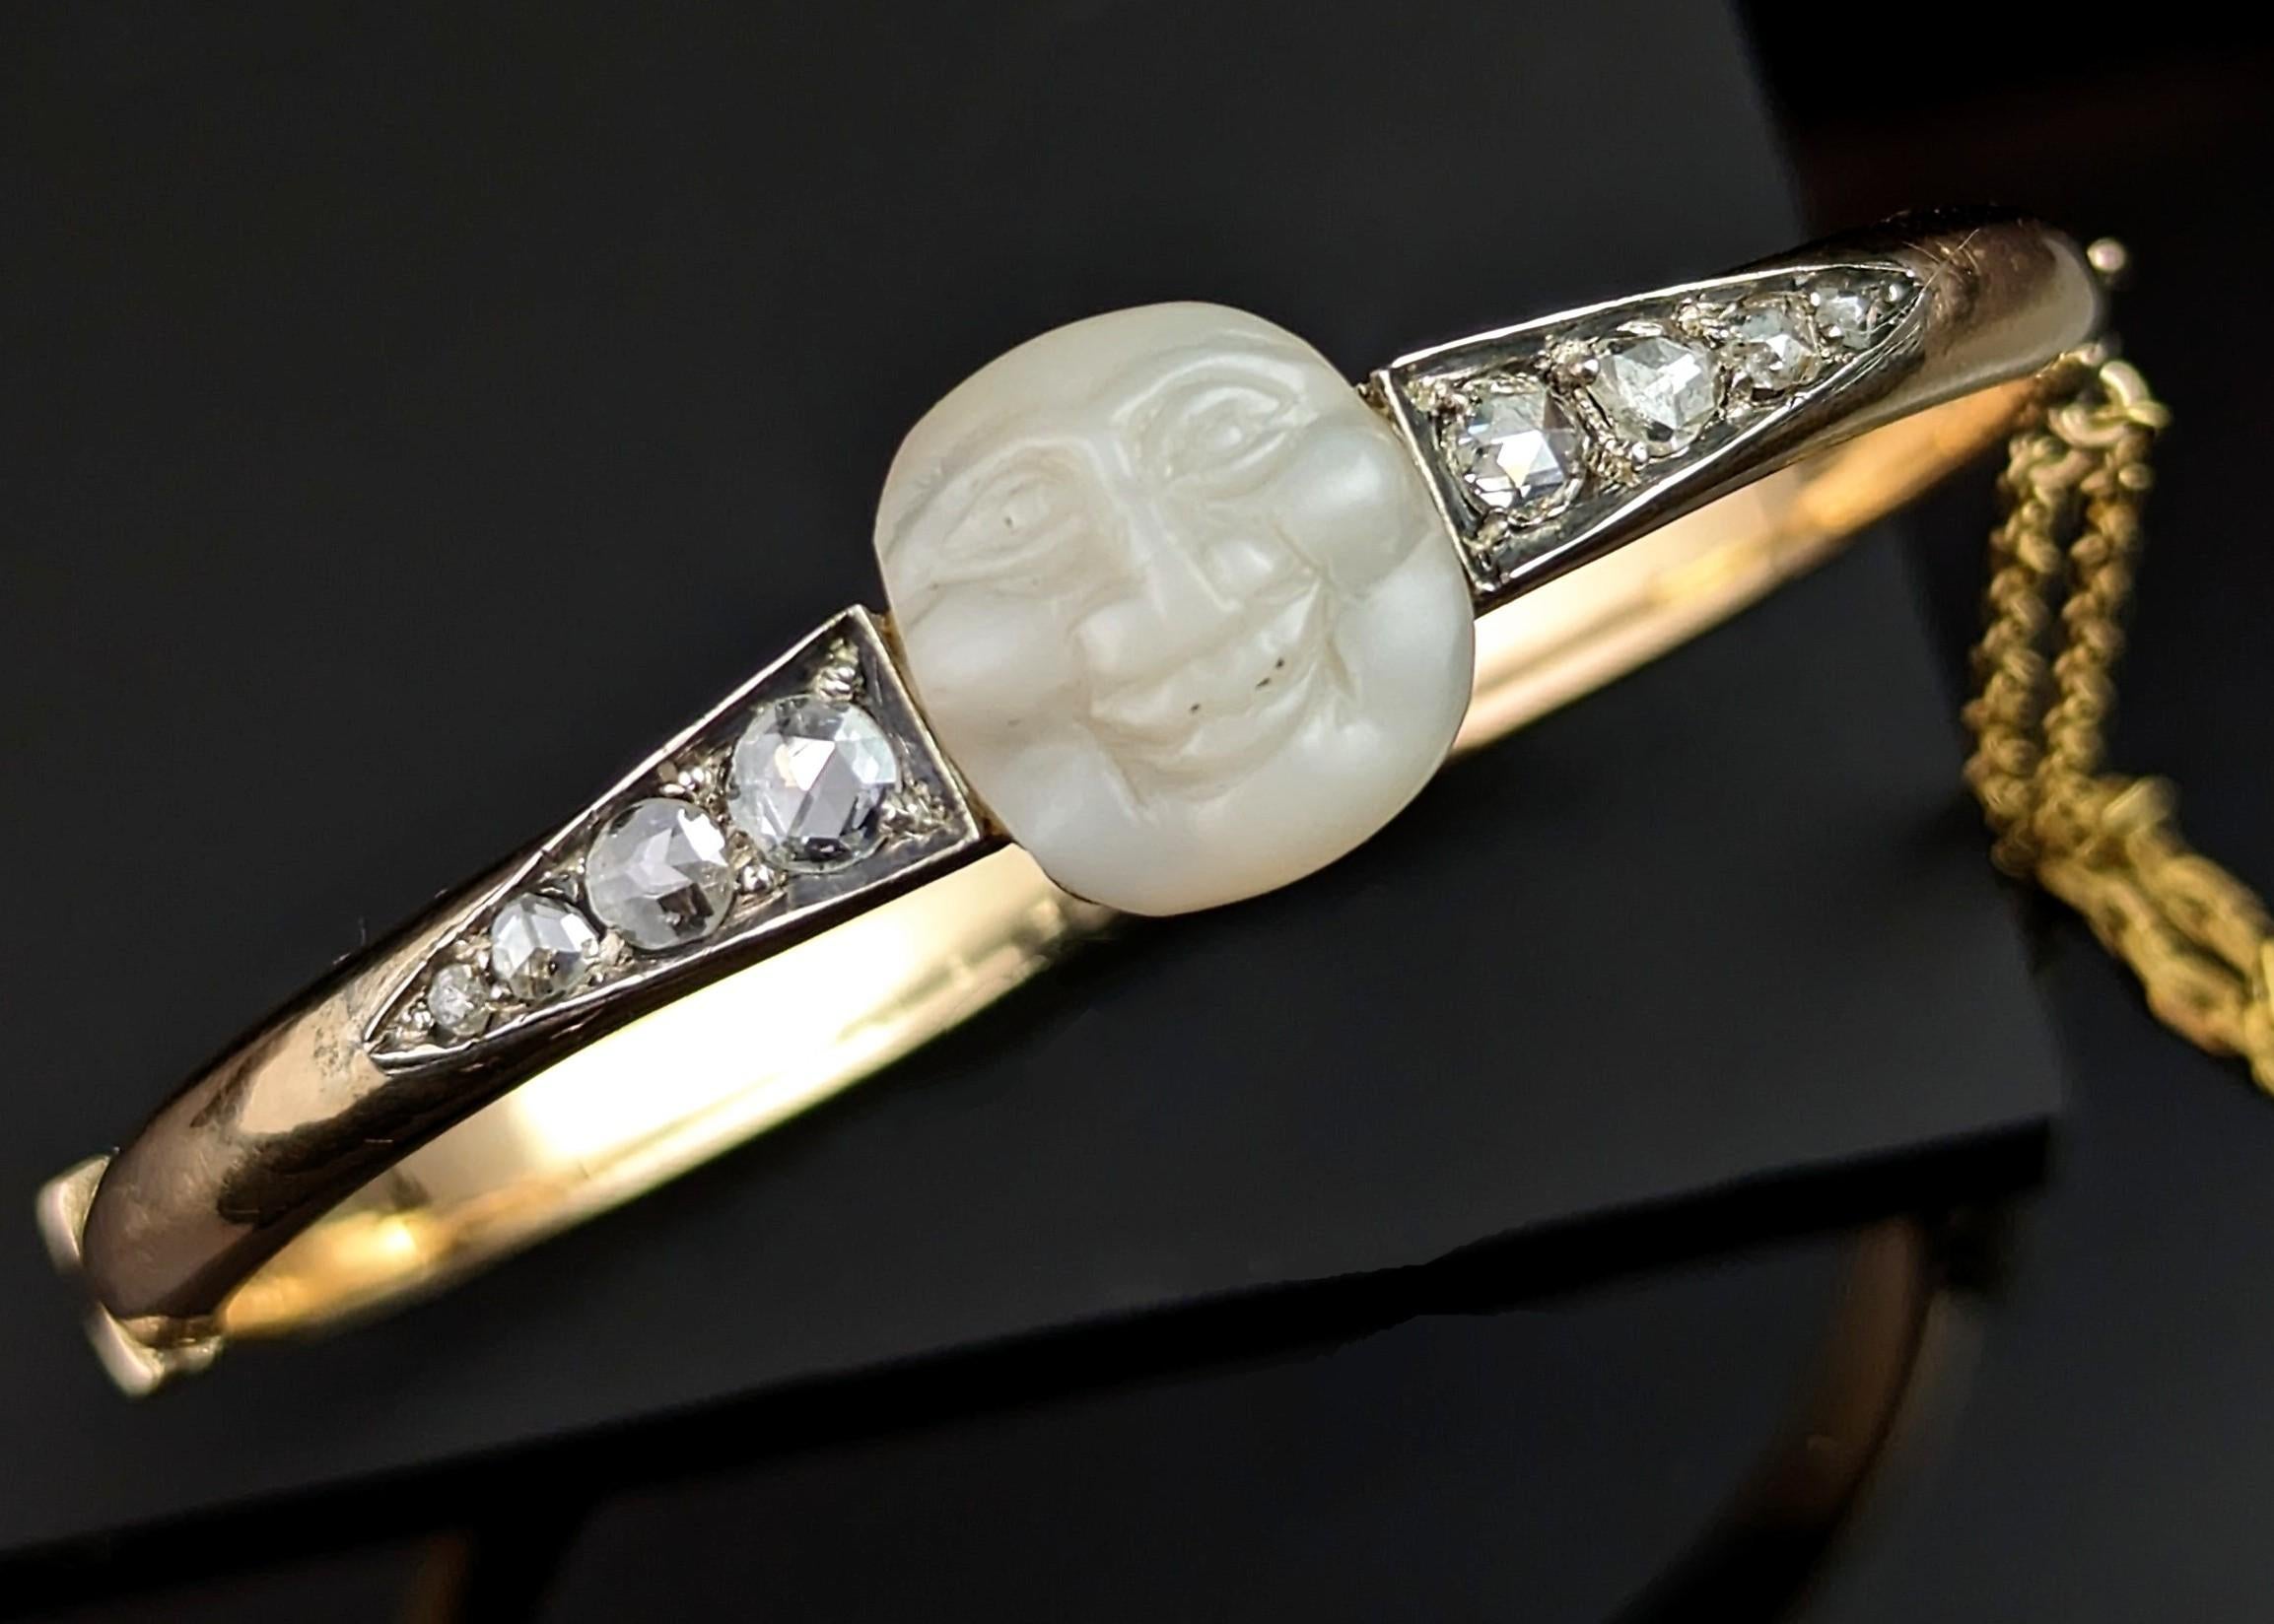 Vous ne pouvez pas vous empêcher de tomber amoureux de cette pièce étonnante ! Un très rare bracelet ancien, de l'époque victorienne, avec un homme dans la lune et des diamants.

Les bijoux de l'homme dans la lune étaient populaires à l'époque